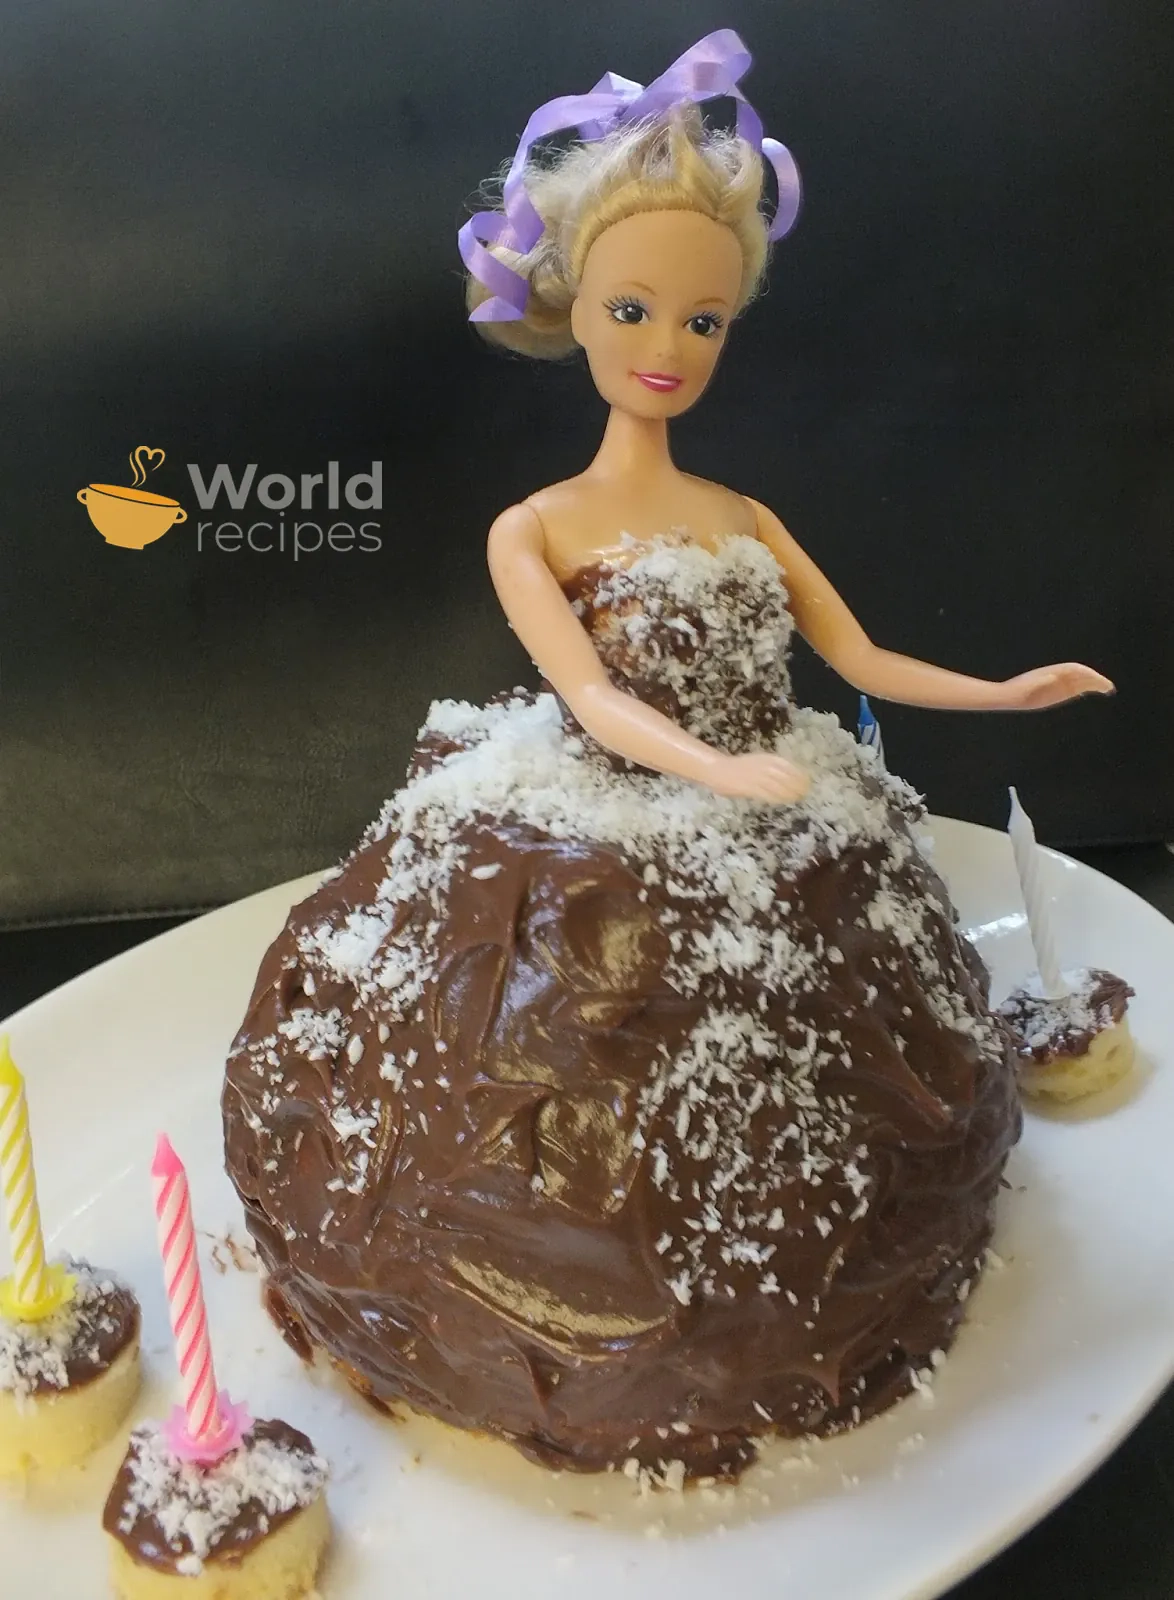 Tortas "Barbie" - barbė su maskarponės sūriu ir nutella kremu